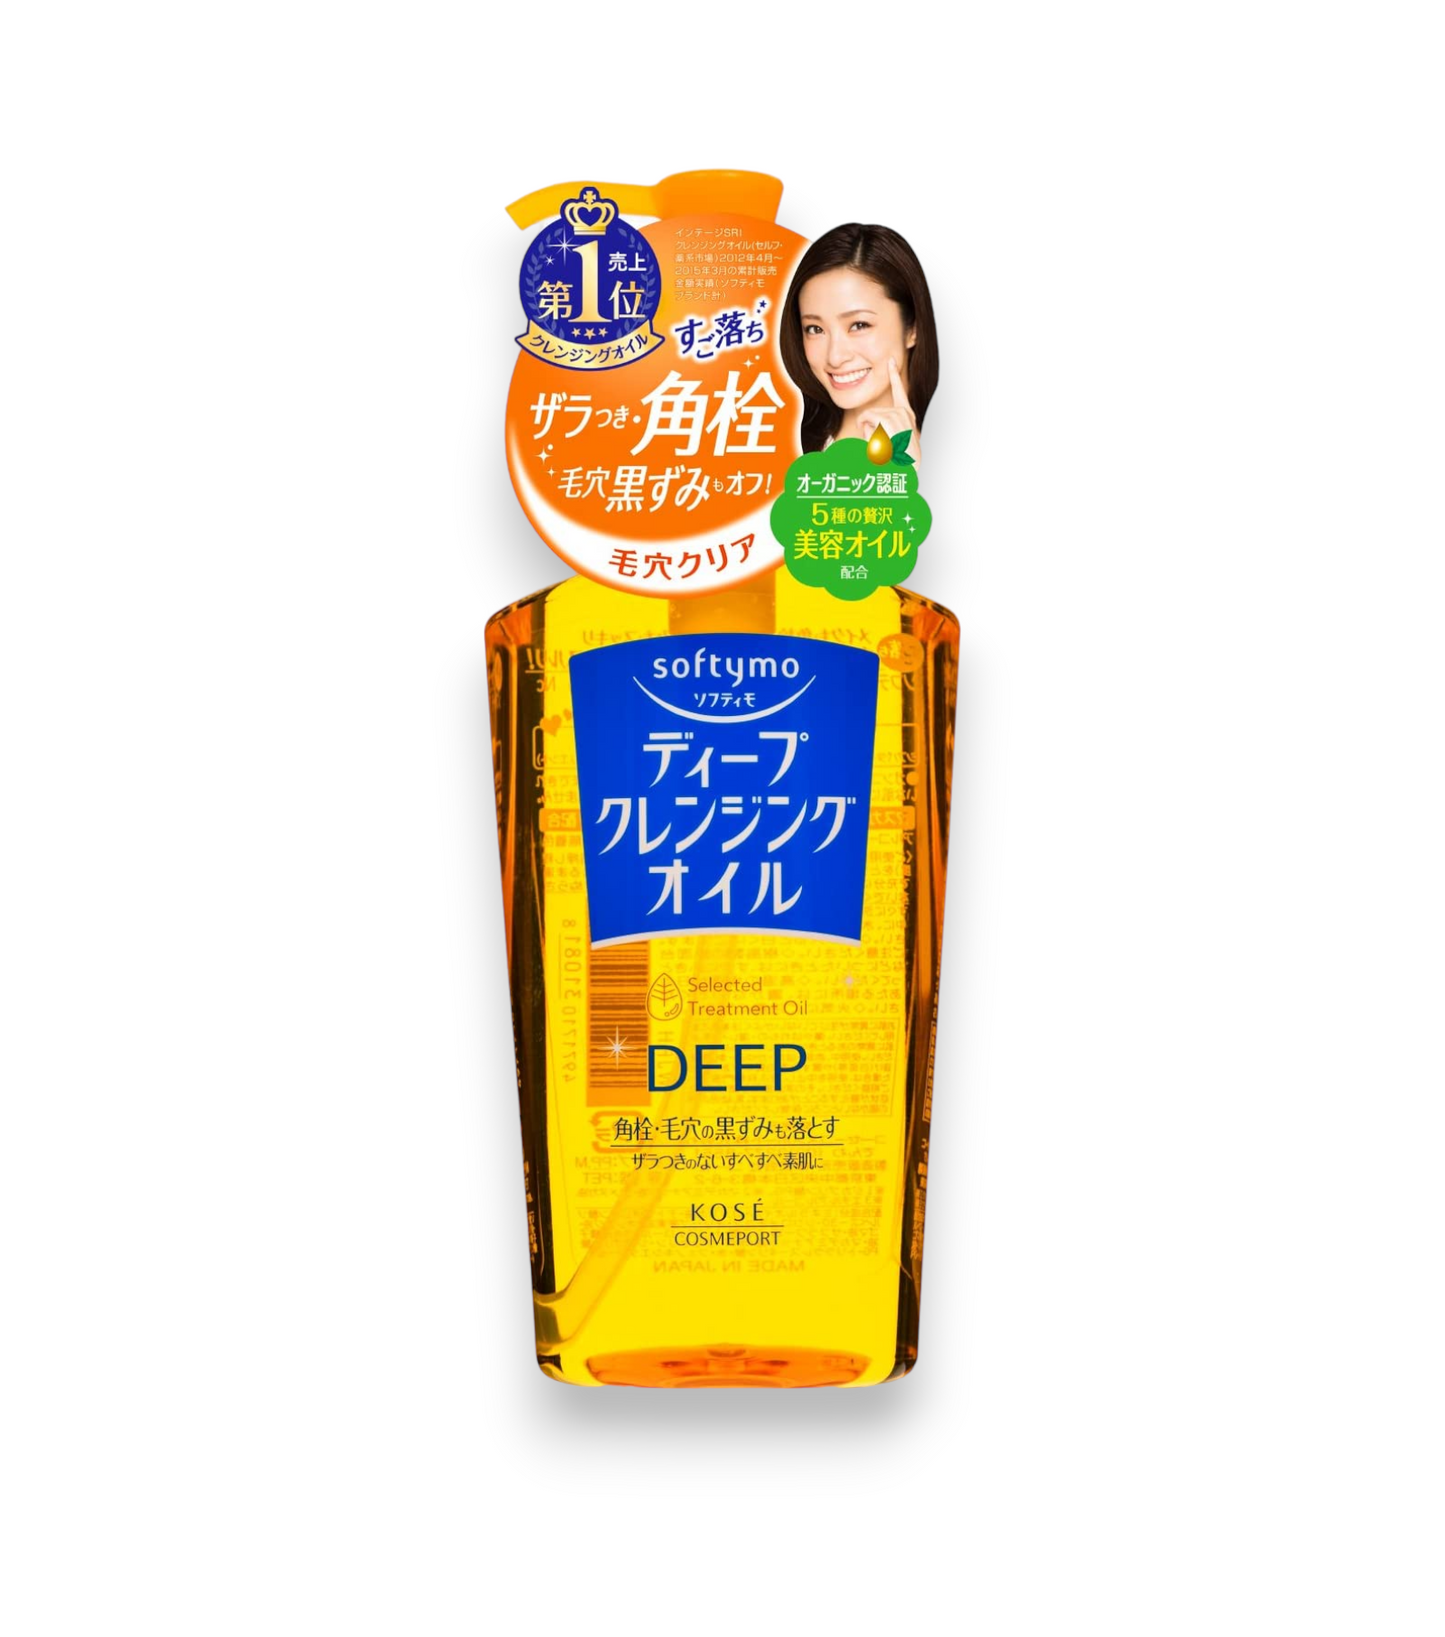 Huile démaquillante / nettoyante - KOSE Softymo Deep Cleansing Oil - 230ml : Une formule légère et douce pour une peau propre et nette